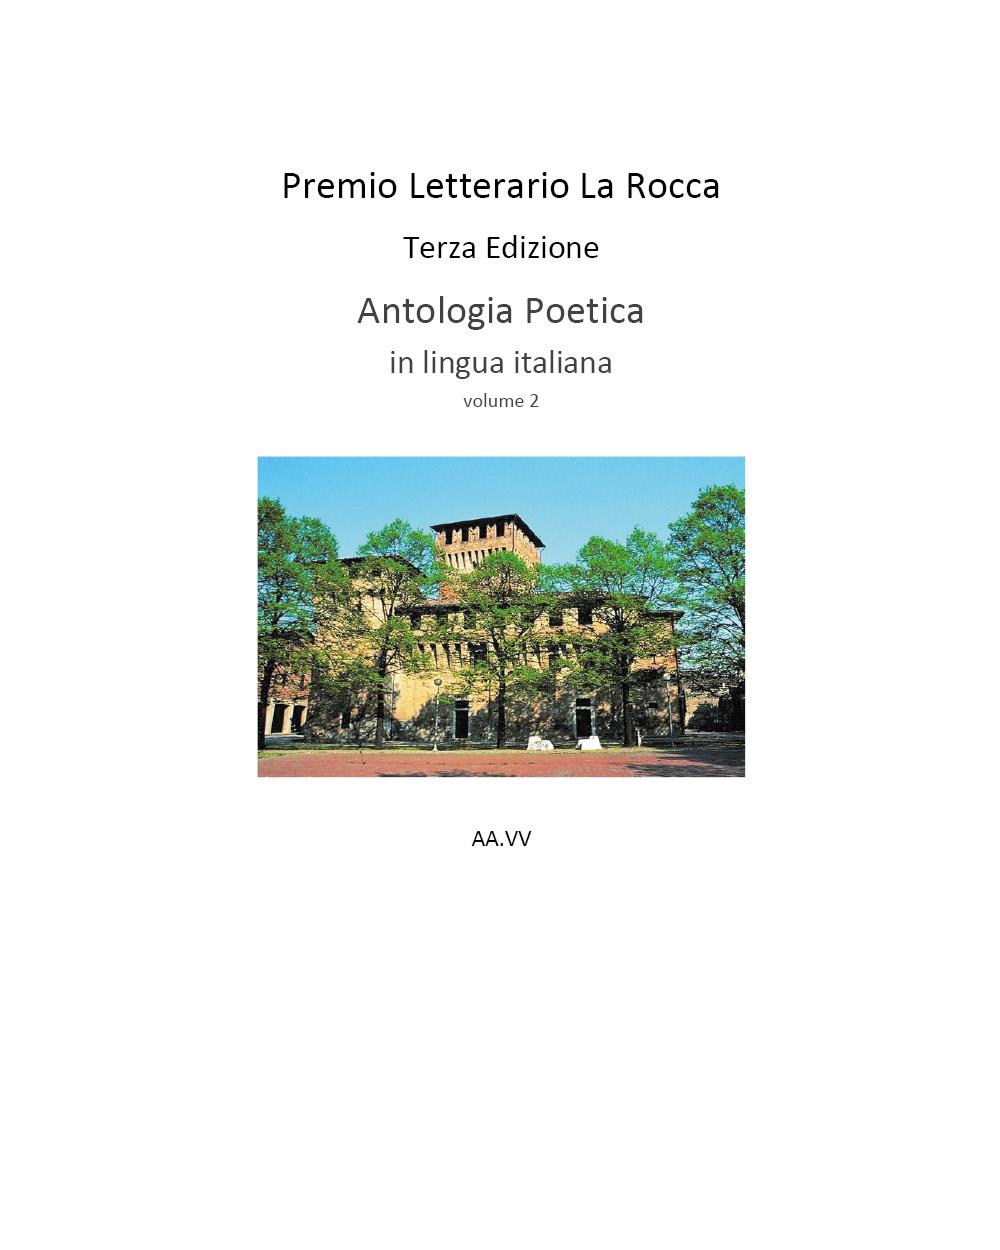 Premio Letterario La Rocca Terza Edizione 2021   Antologia Poetica in lingua italiana  Volume 2 AA.VV